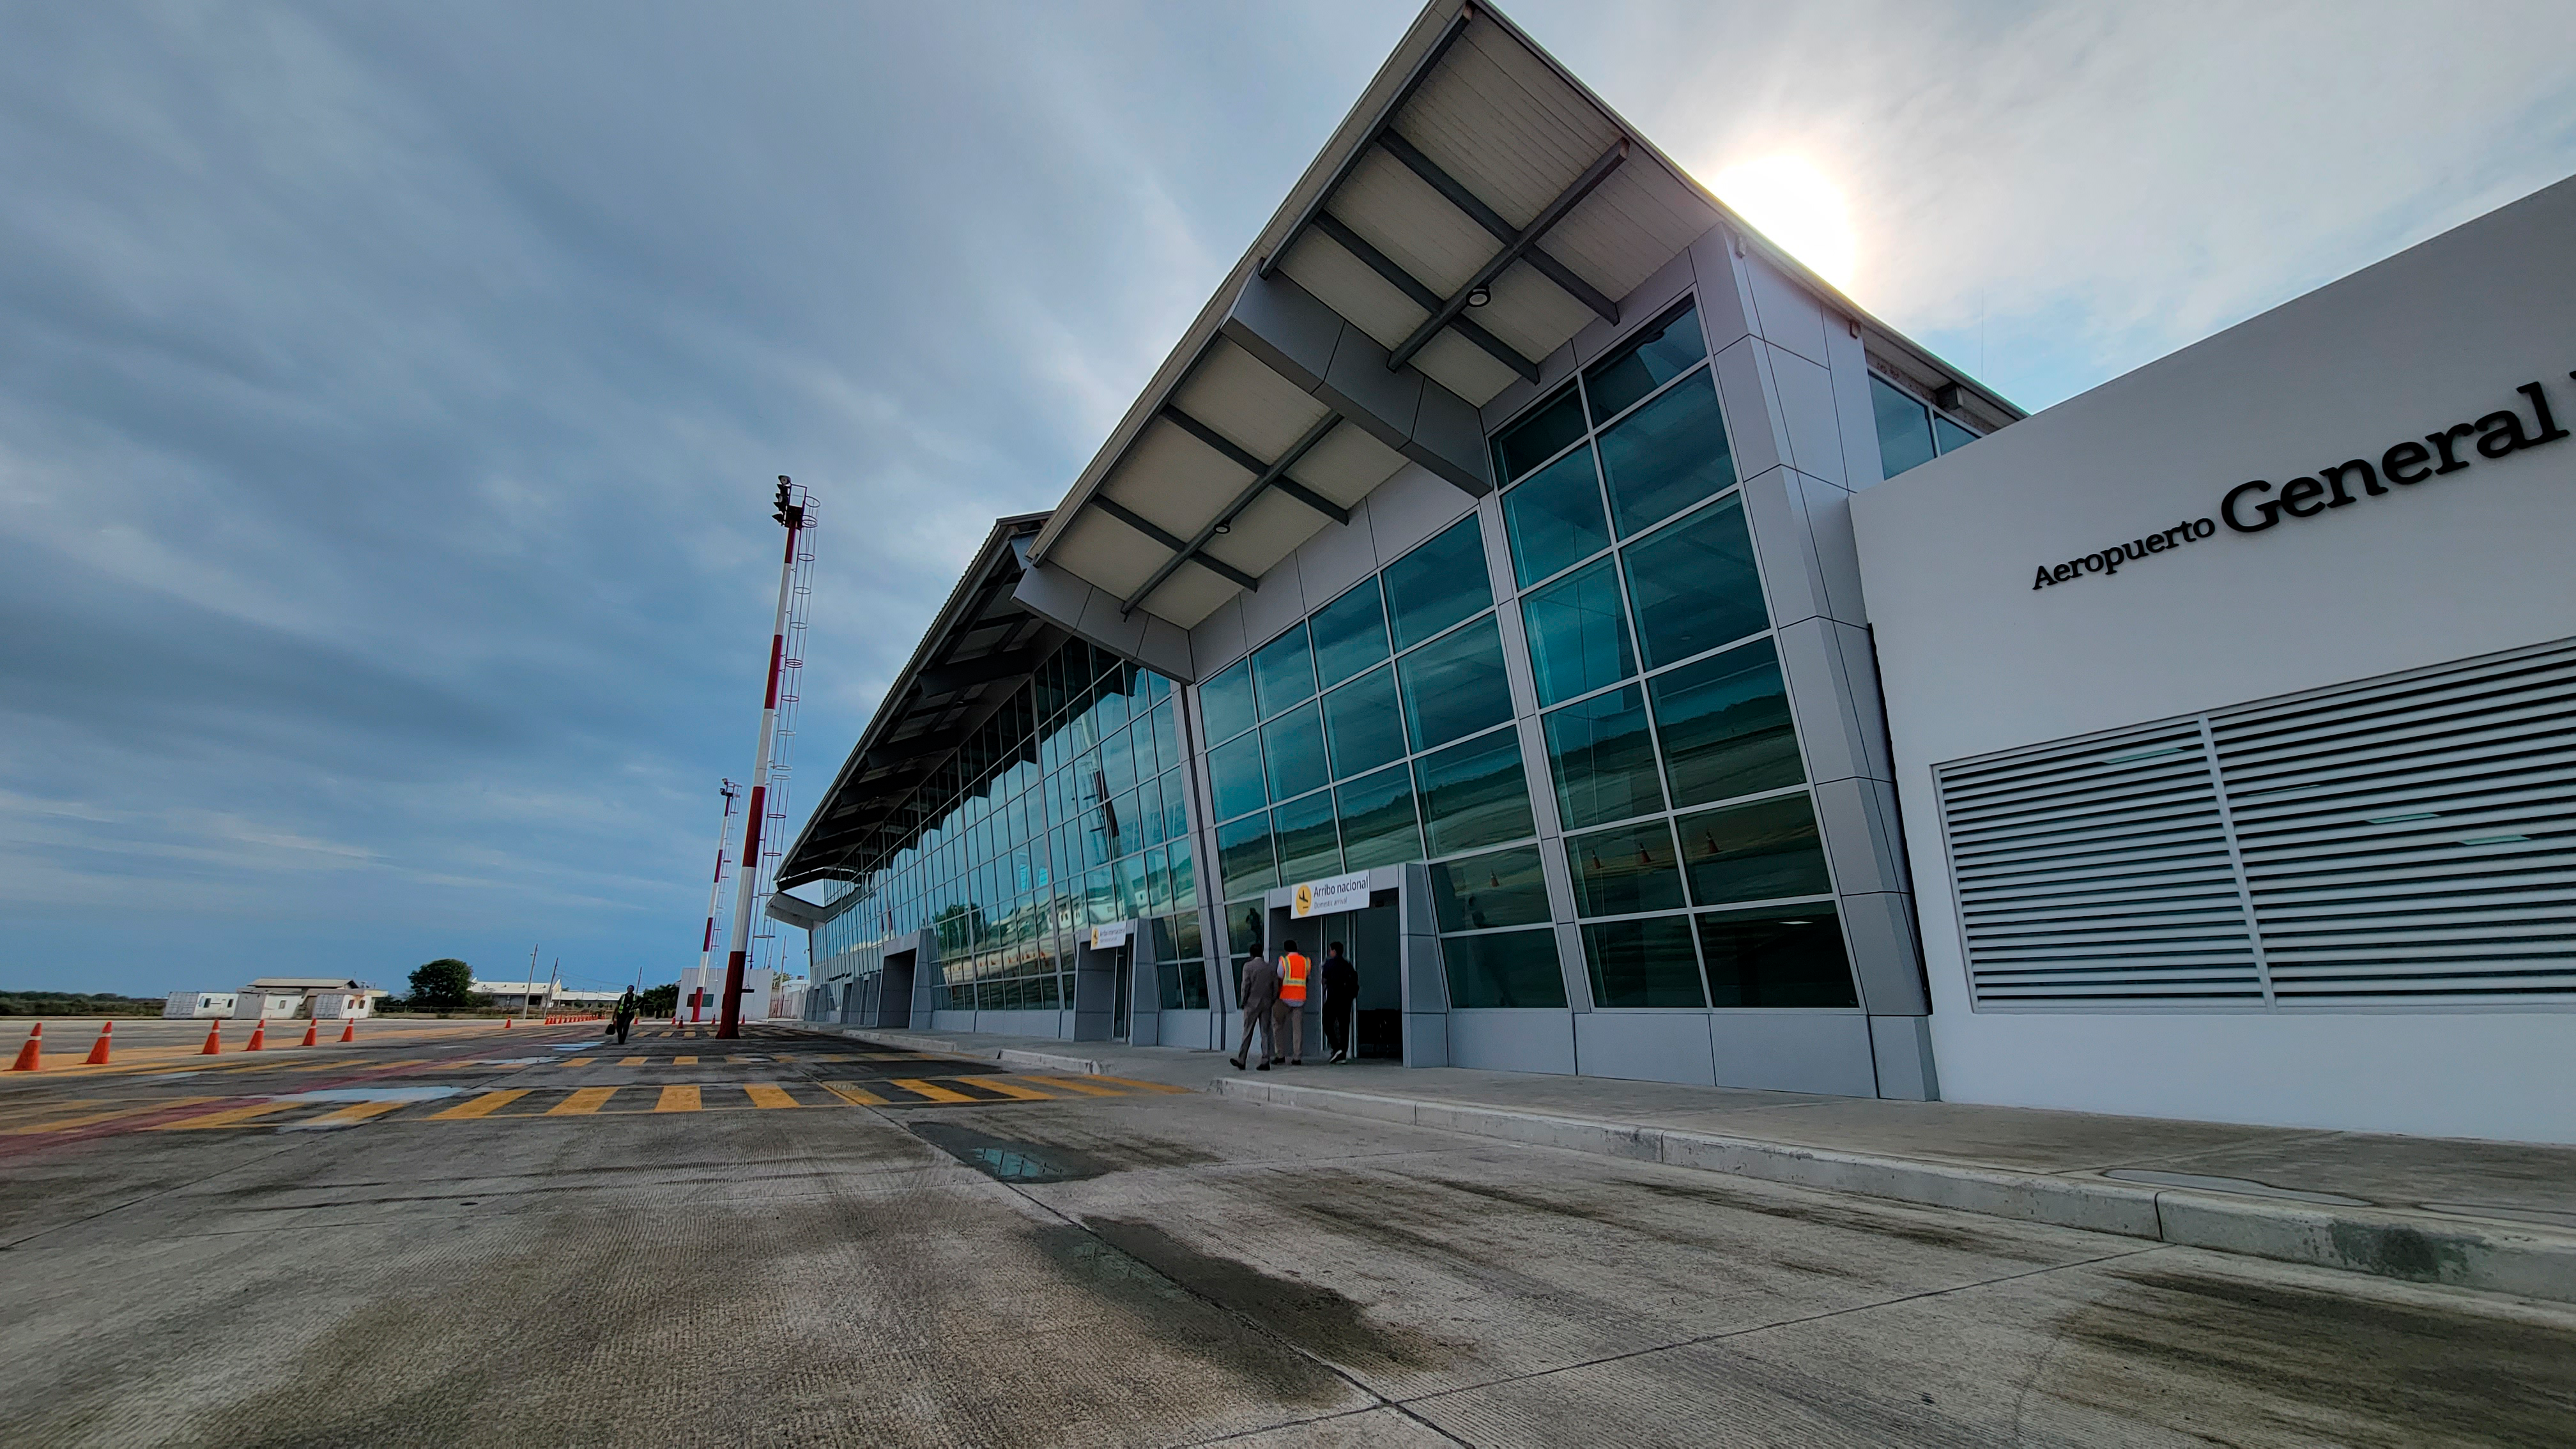 El aeropuerto General Eloy Alfaro de Manta tendrá vuelos internacionales después de siete años. Foto: Twitter @n_larenas